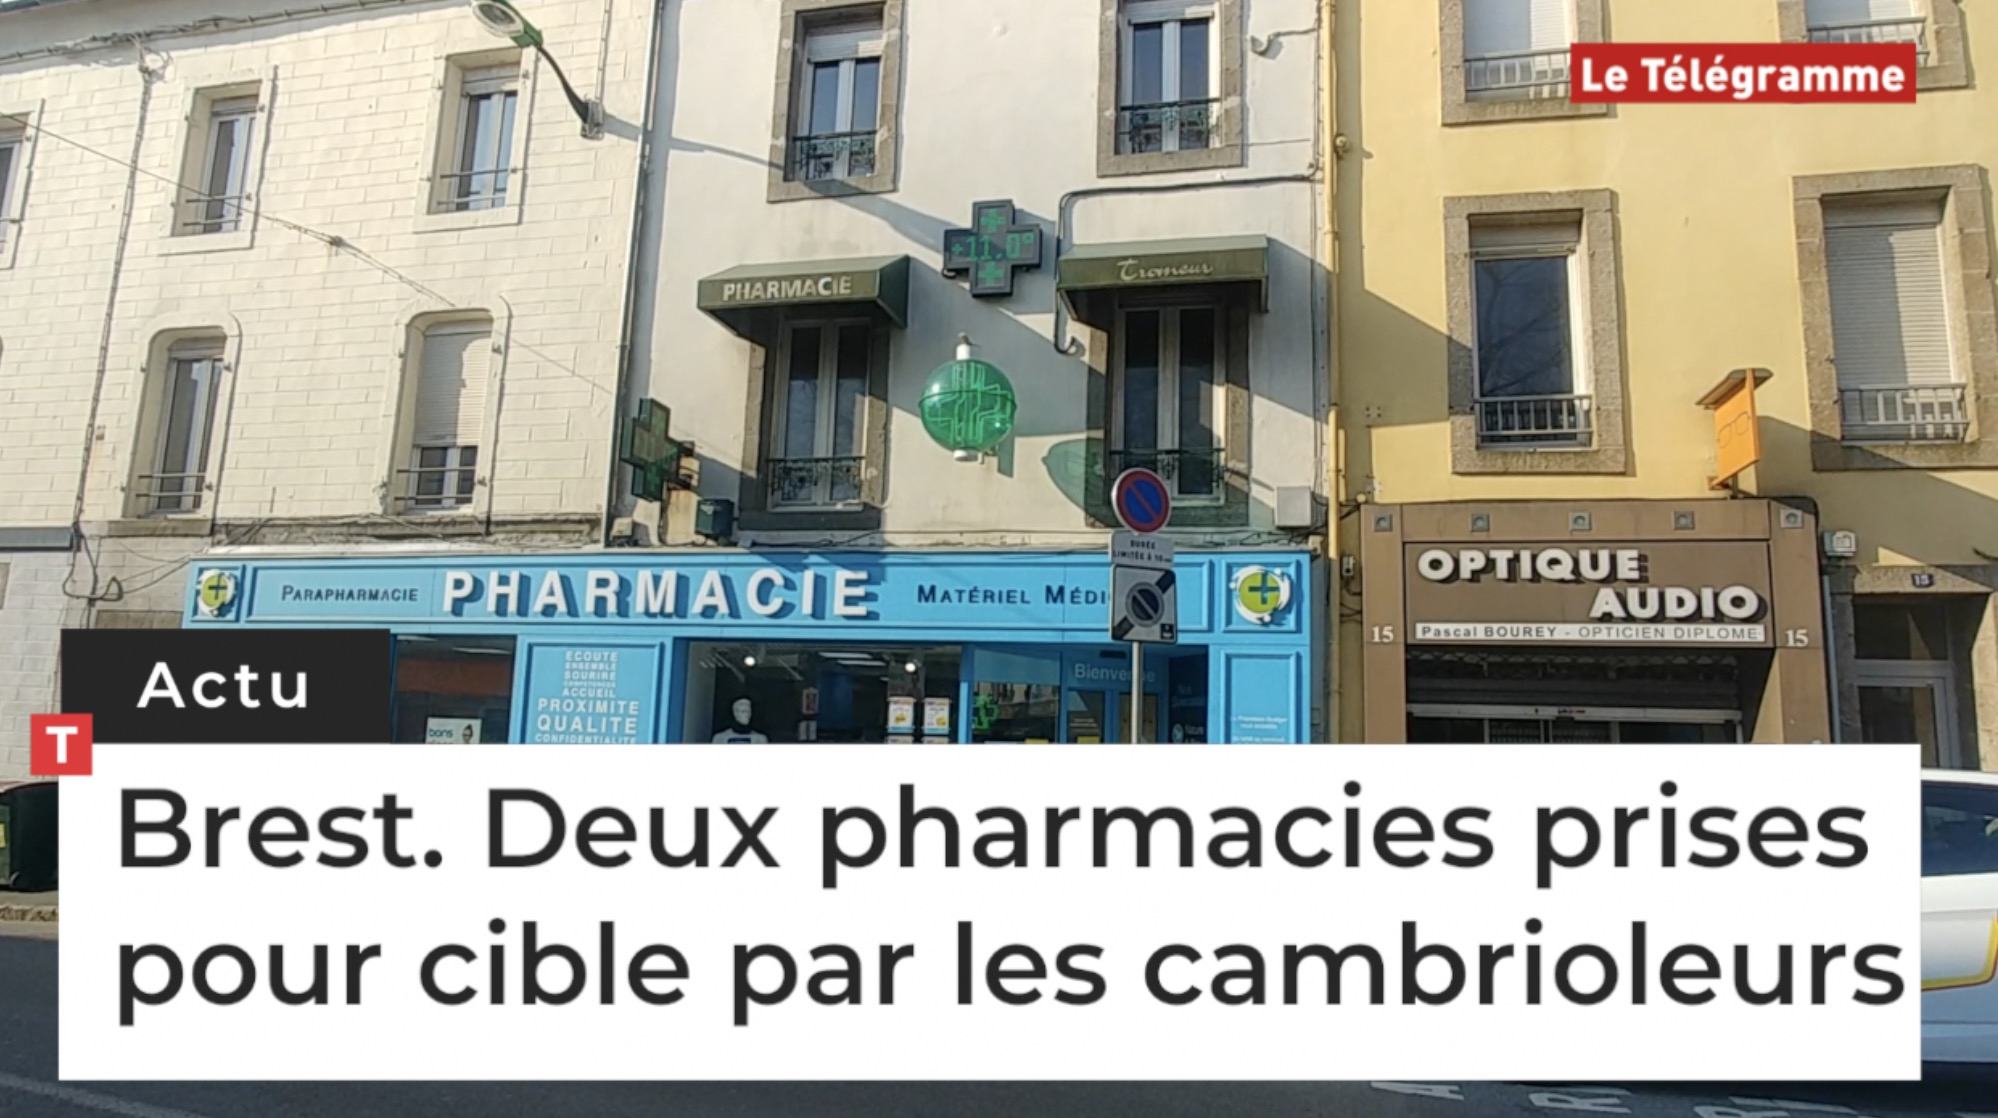 Brest. Deux pharmacies prises pour cible par les cambrioleurs (Le Télégramme)